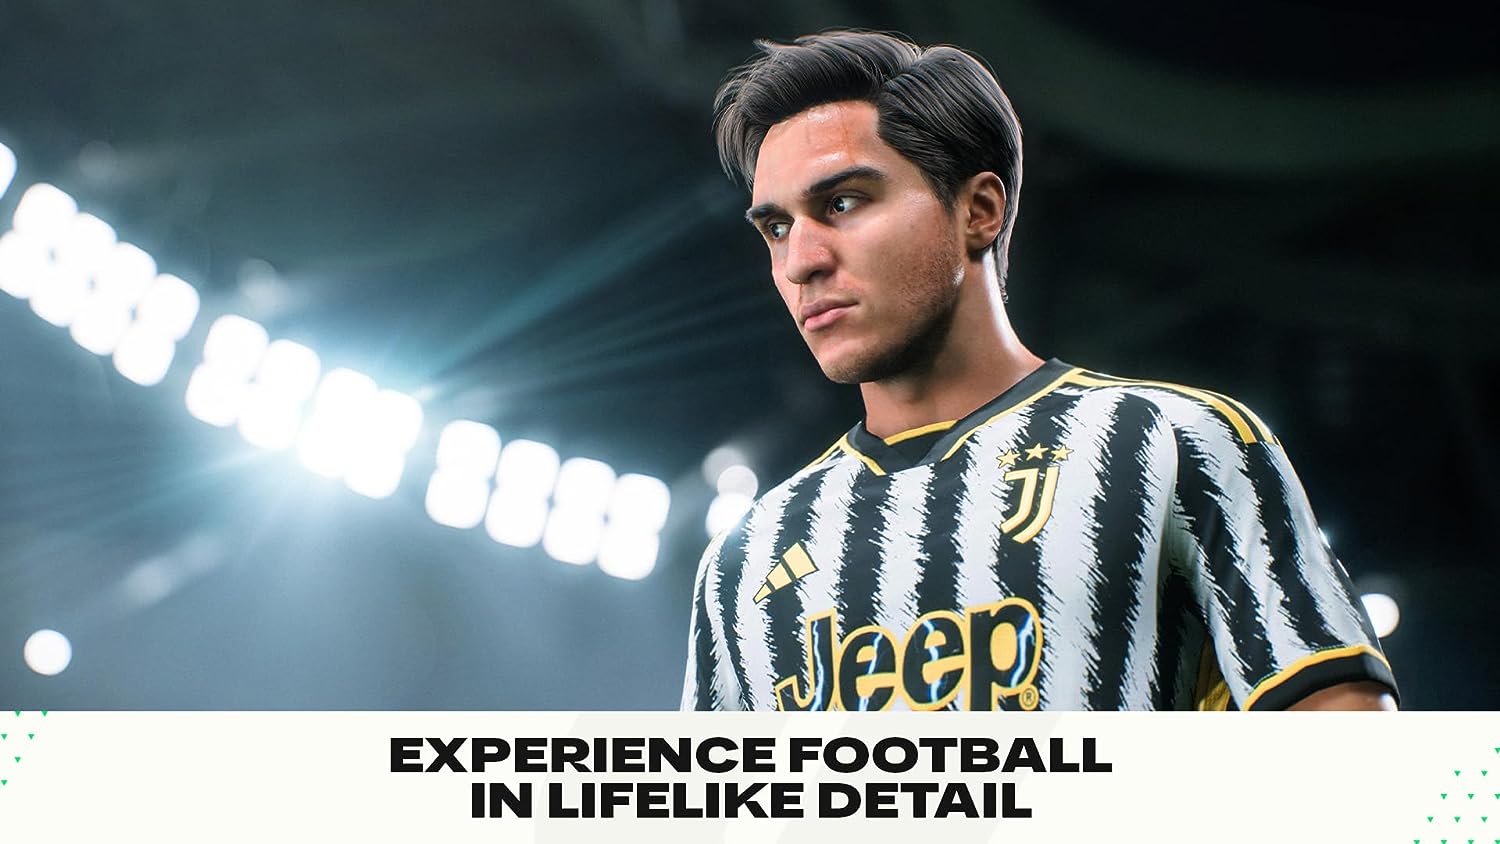 EA SPORTS FC 24 Standard Edition PS4, Videogiochi